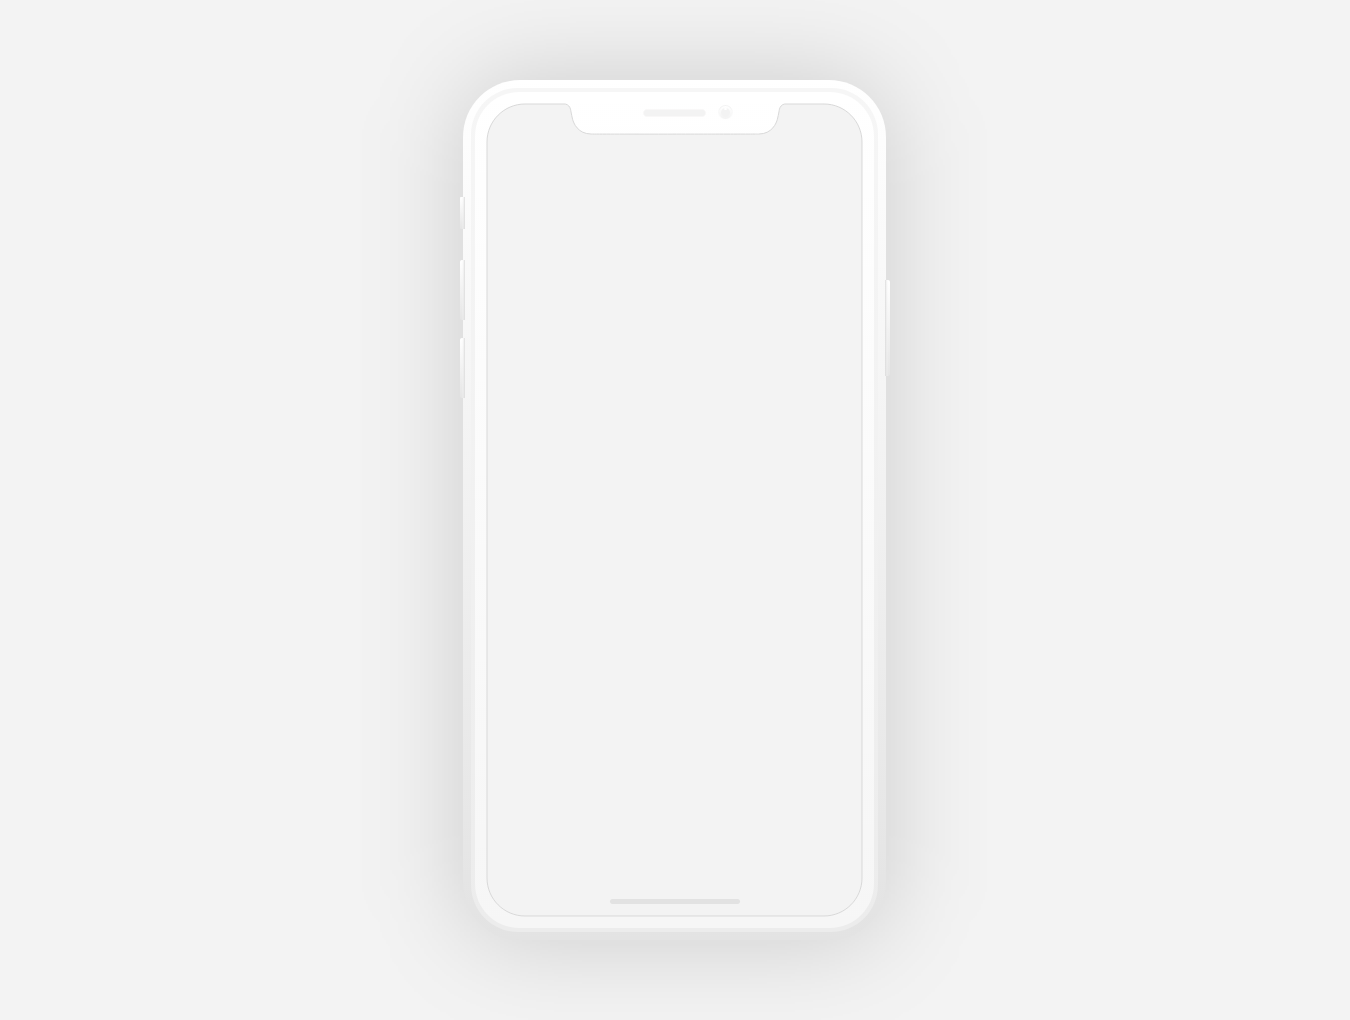 iPhoneX手机贴图PSD模板Dark & Lig